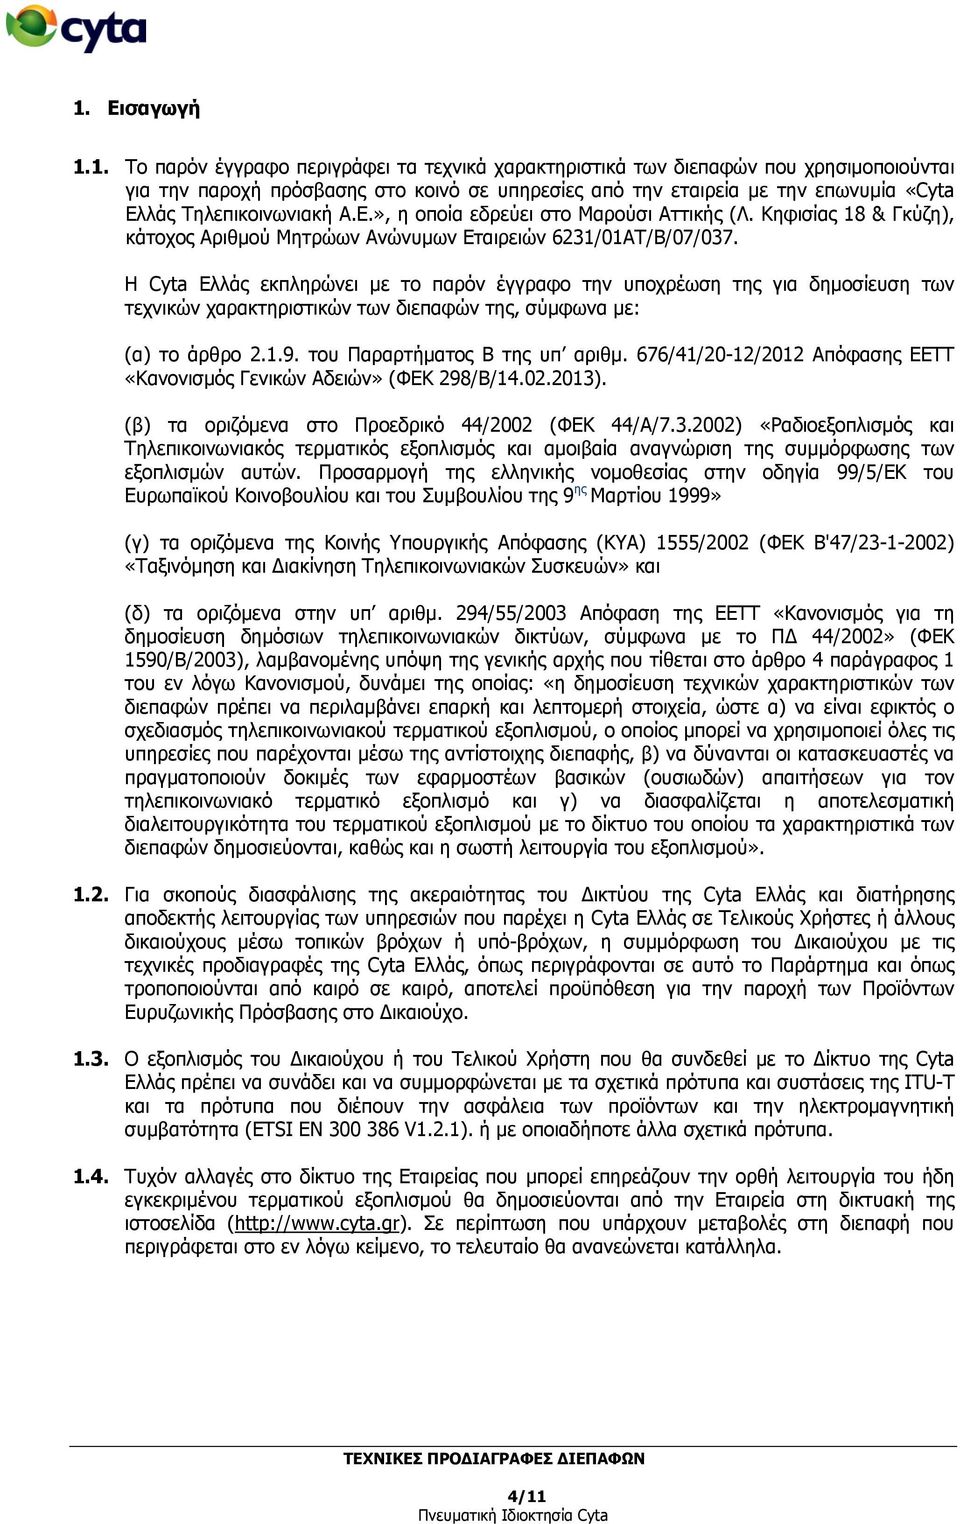 Η Cyta Ελλάς εκπληρώνει με το παρόν έγγραφο την υποχρέωση της για δημοσίευση των τεχνικών χαρακτηριστικών των διεπαφών της, σύμφωνα με: (α) το άρθρο 2.1.9. του Παραρτήματος Β της υπ αριθμ.